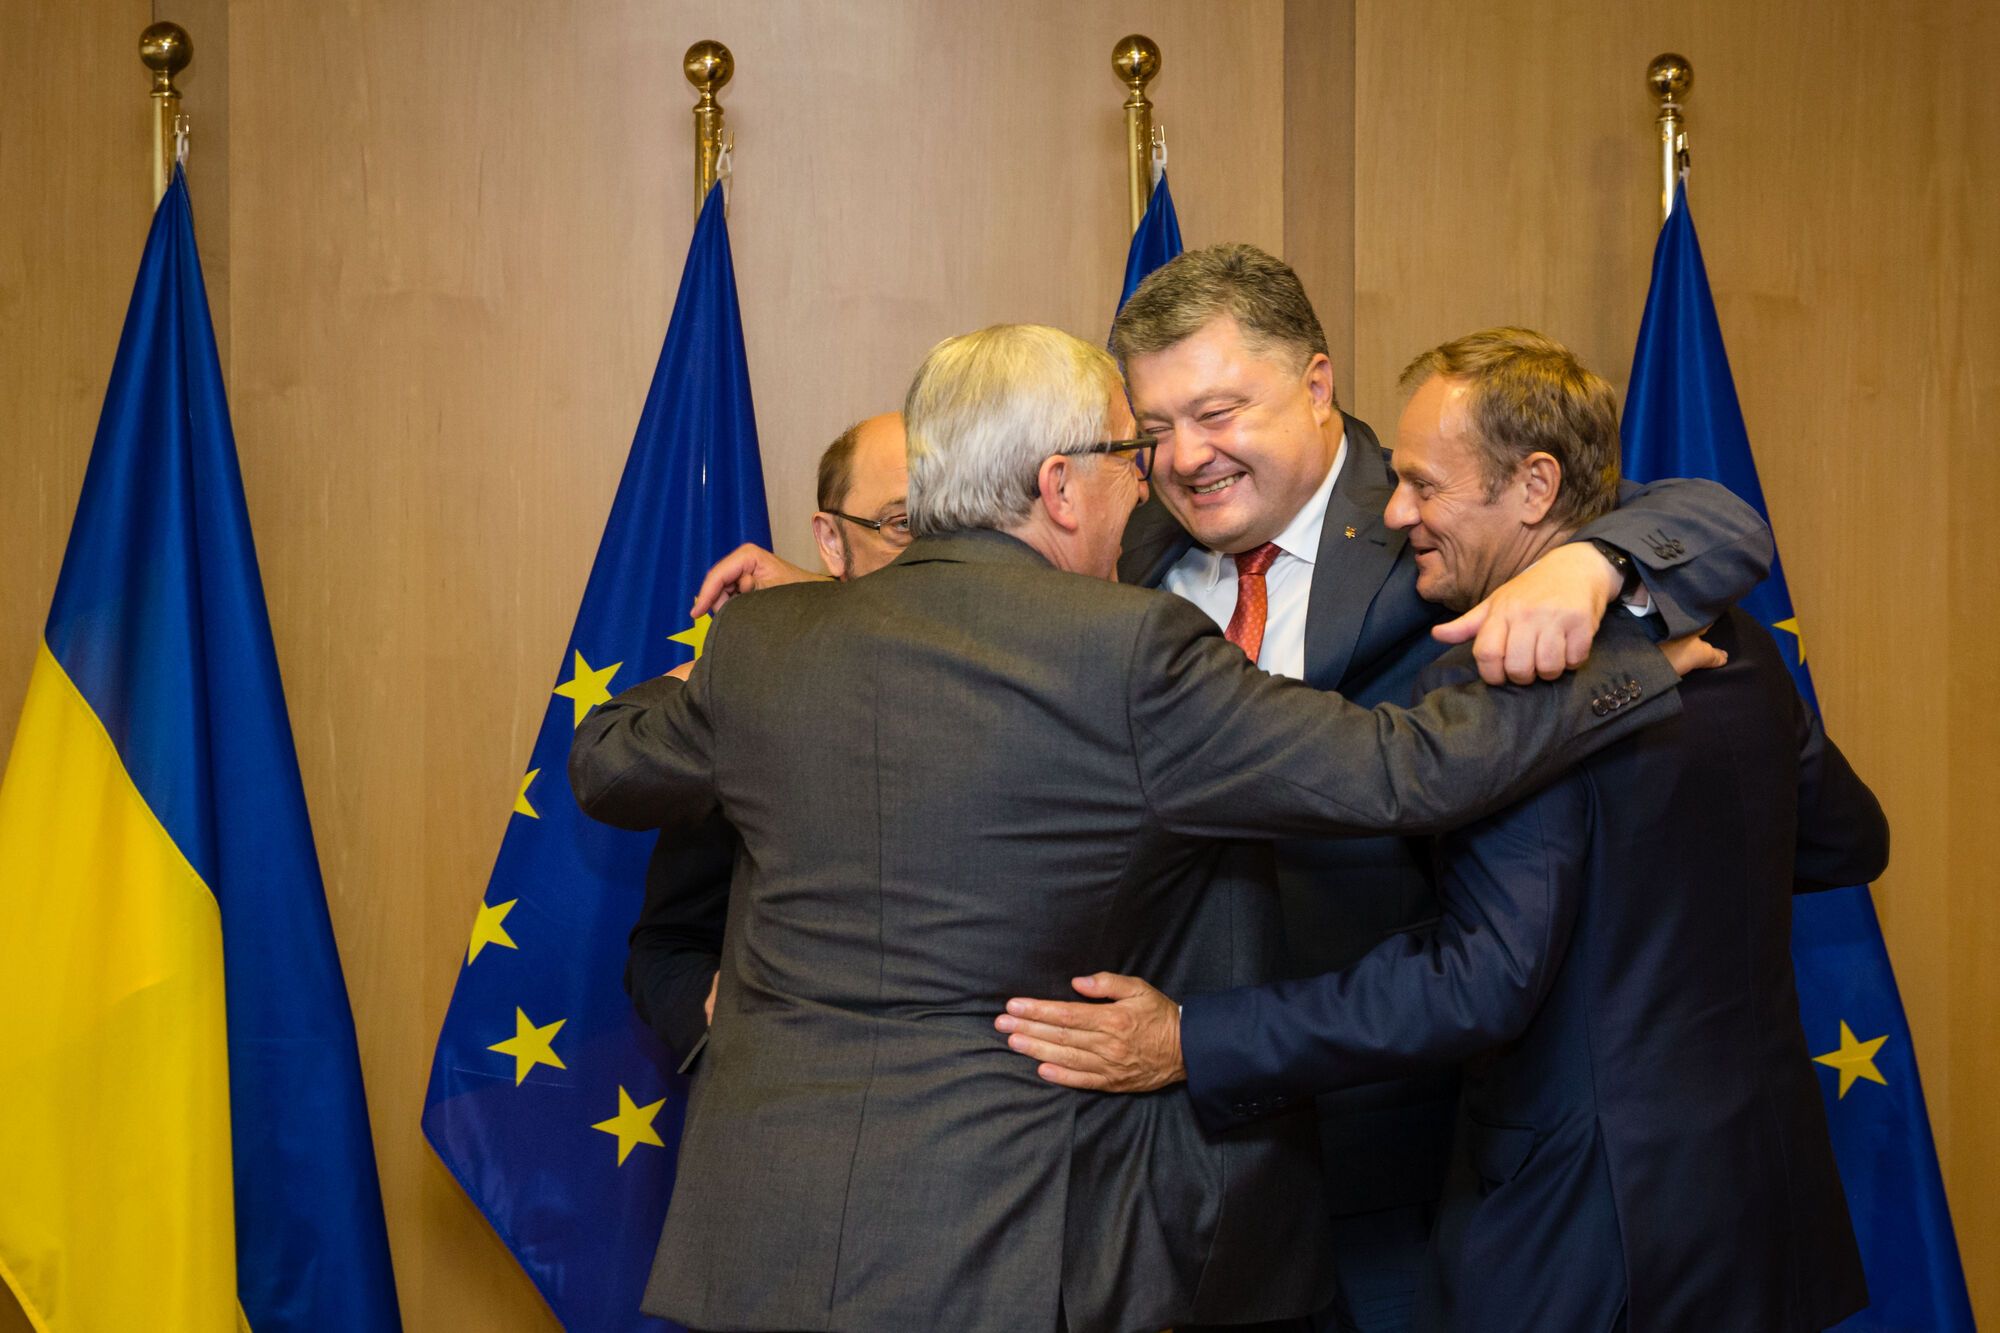 Порошенко с лидерами ЕС во время рабочего визита в институции ЕС. Мини-саммит "Украина-ЕС" в Брюсселе, 27.06.2016